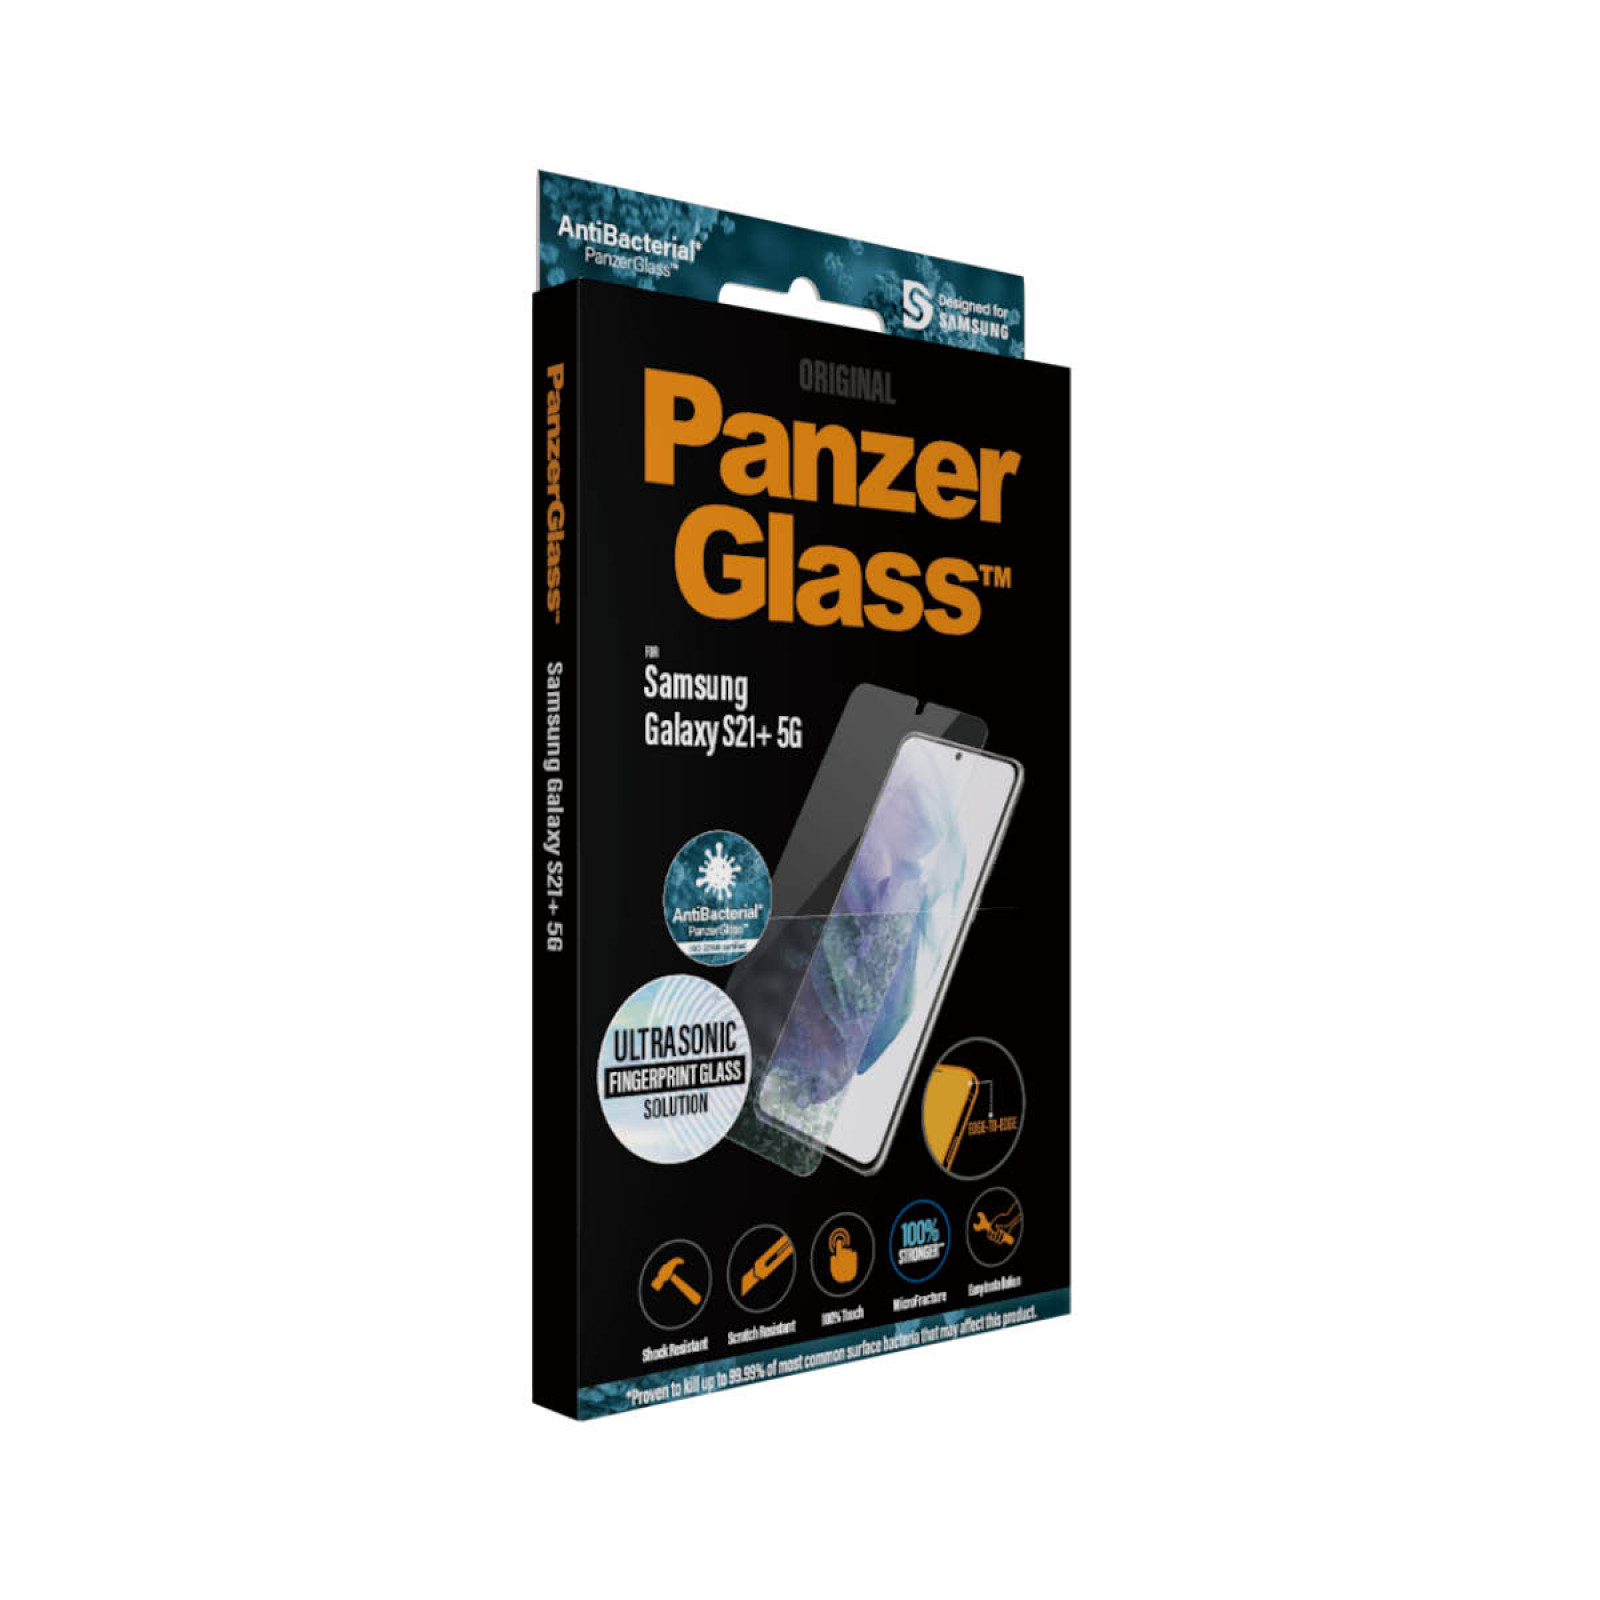 Стъклен протектор  Samsung Galaxy S21 Plus PanzerGlass, Ultrasonic FingerPrint, AntiBacterial - Черен